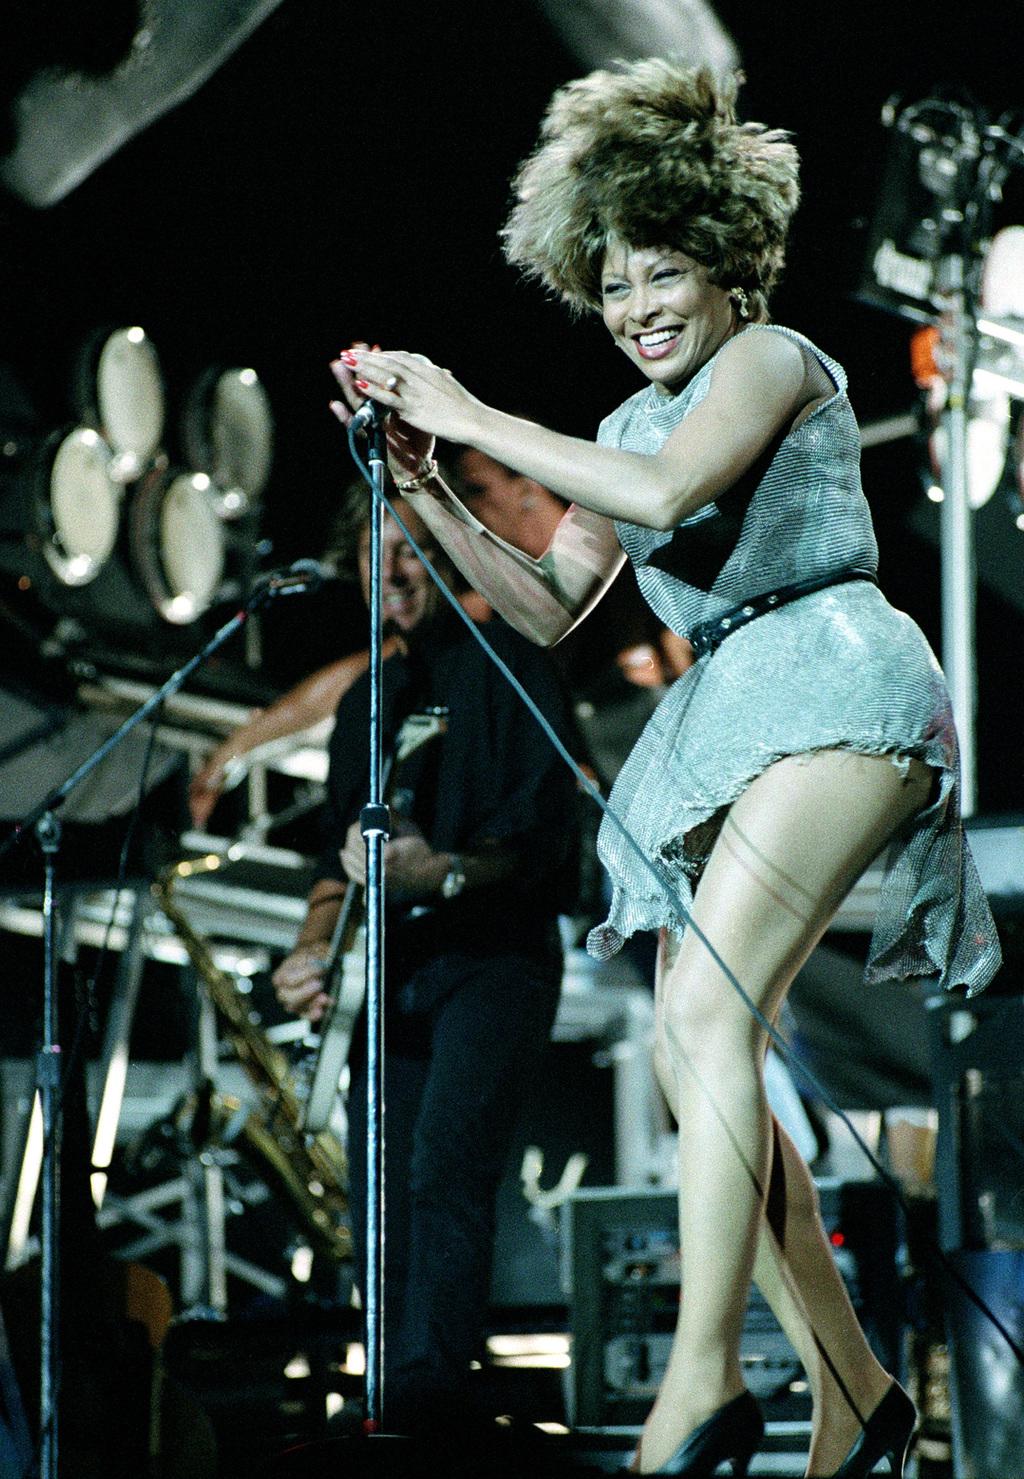 טינה טרנר בהופעה, 1993